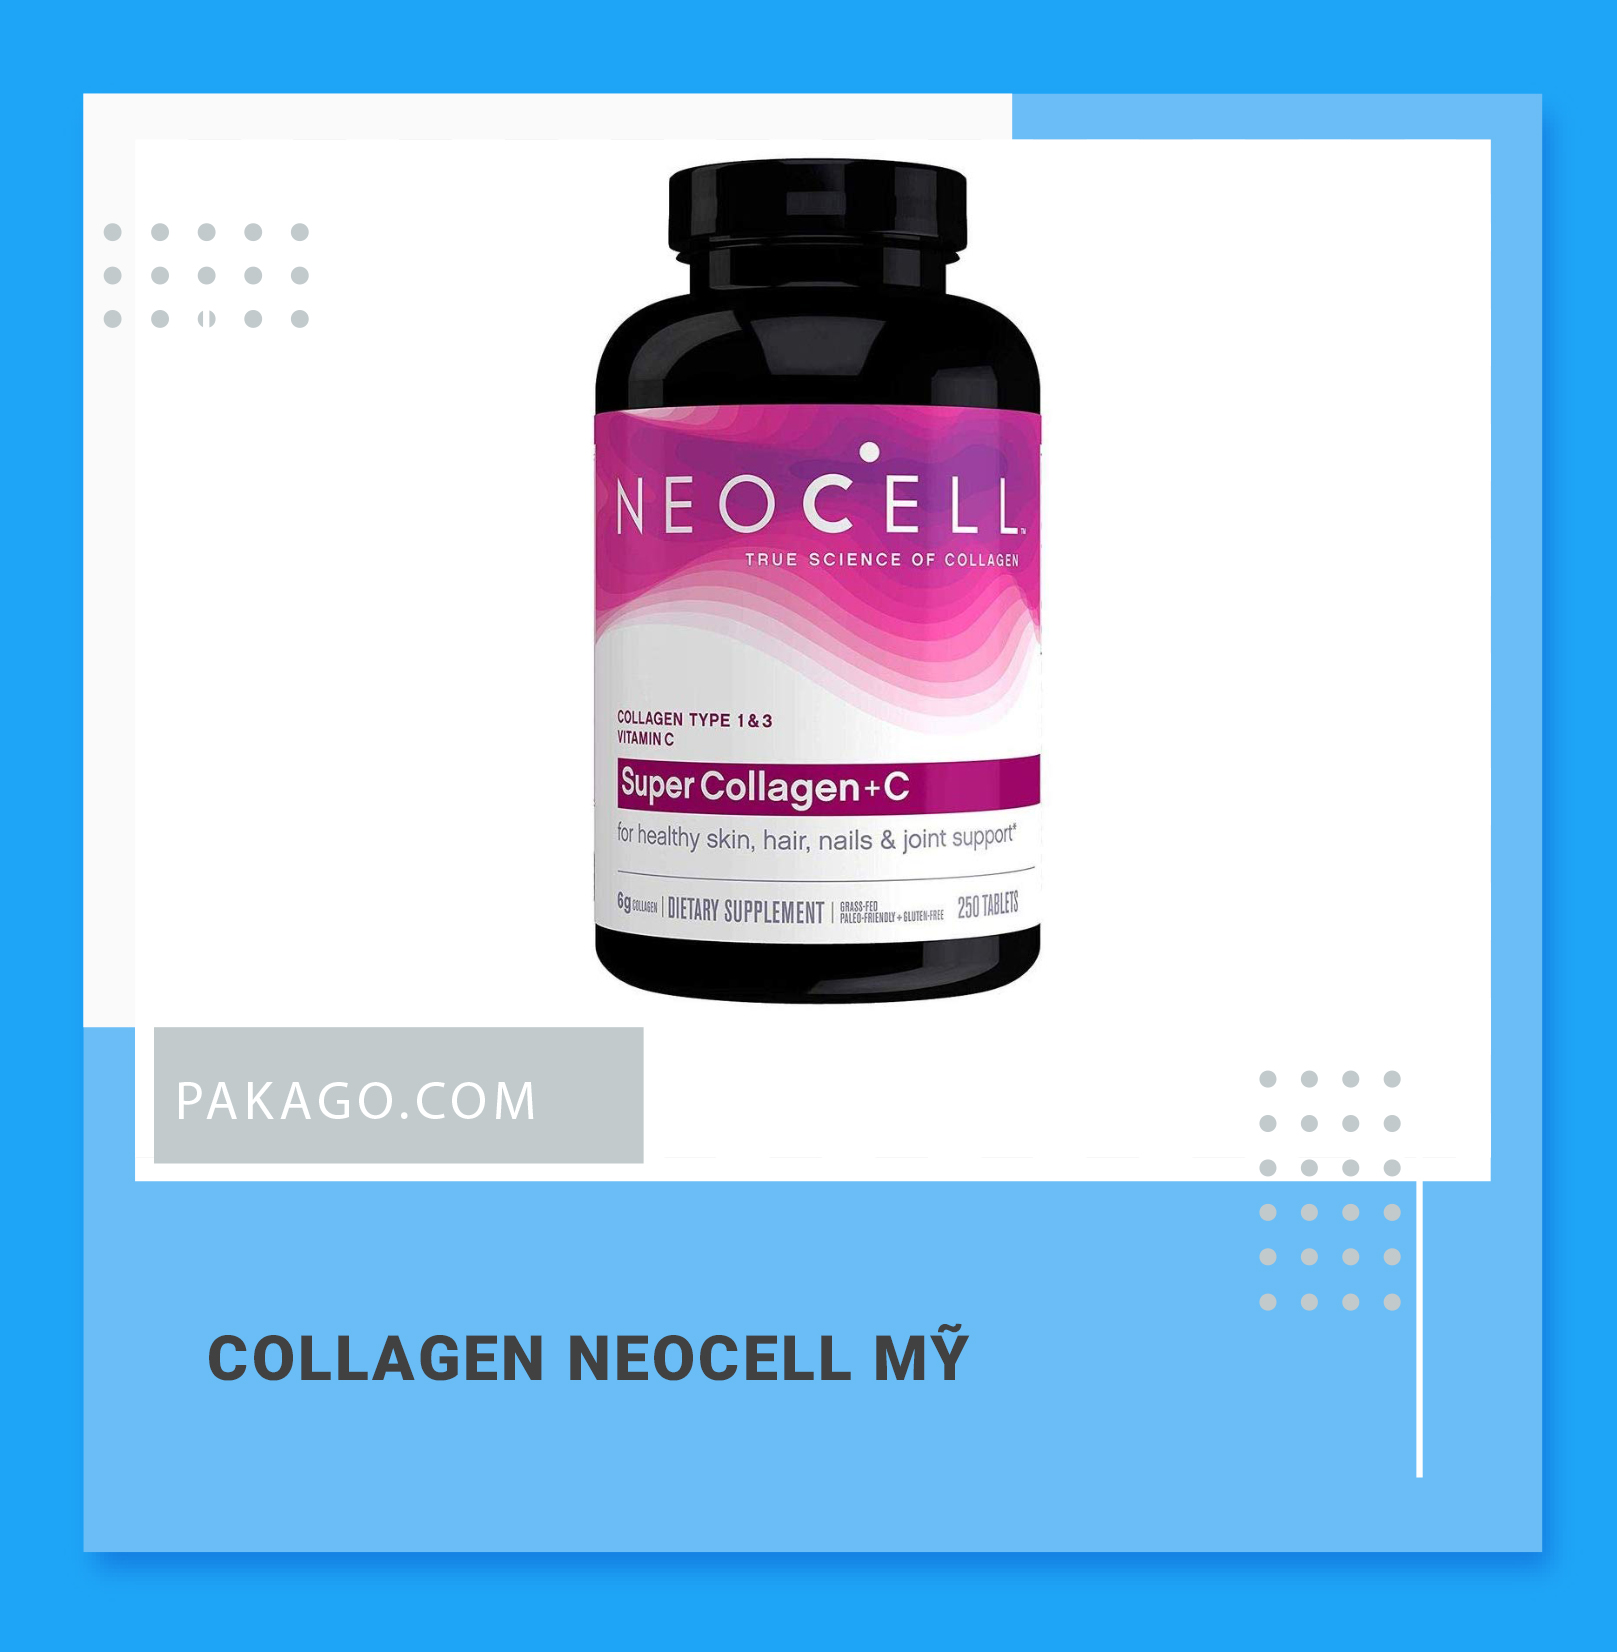 Pakago mua hộ Collagen mỹ, collagen neocell chính hãng, giá tốt 2021